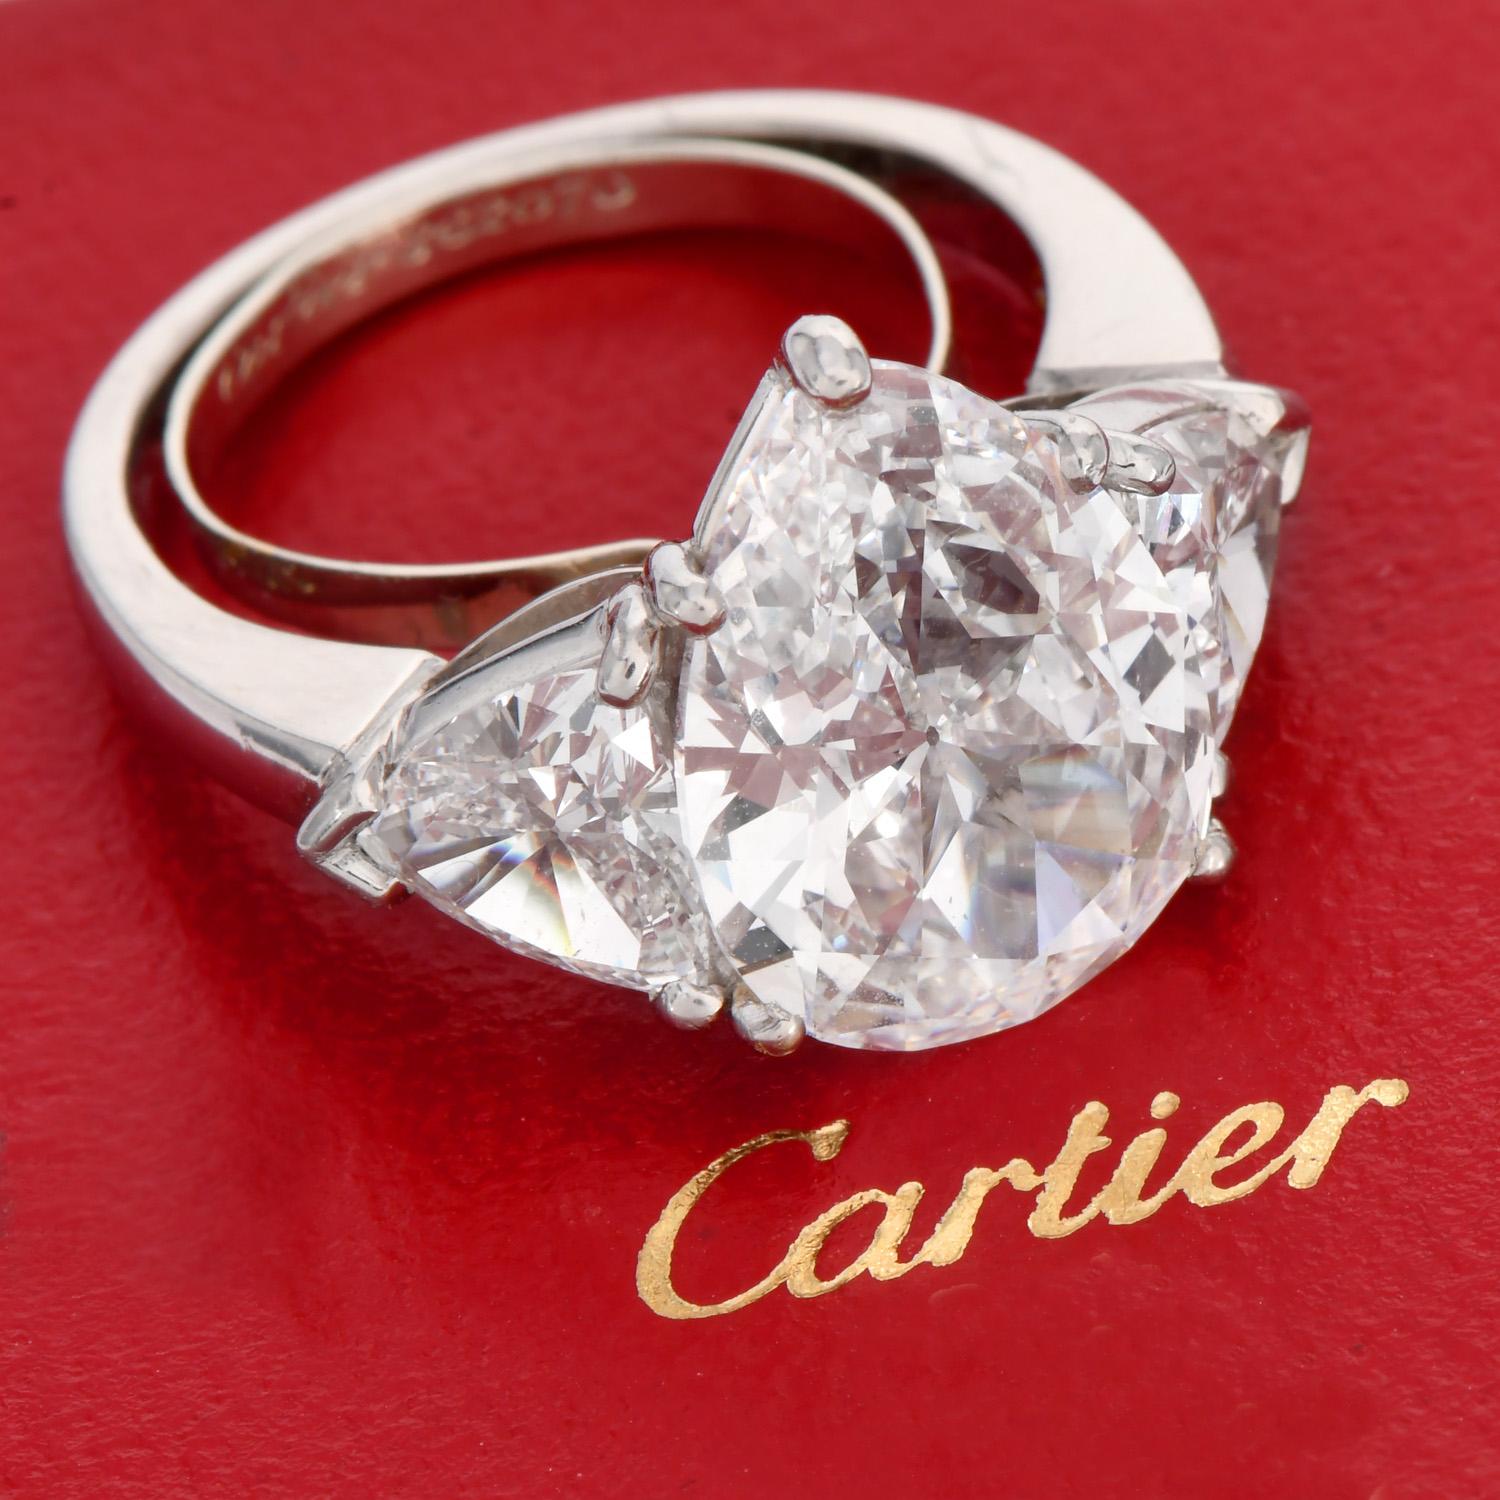 Dieser atemberaubende klassische Cartier Diamantring ist mit einem atemberaubenden birnenförmigen natürlichen Diamanten mit einem Gewicht von 4,07cts, E Farbe, VS1, in einer schönen Platinfassung zentriert.

Dies ist ein tadelloser Diamantring.